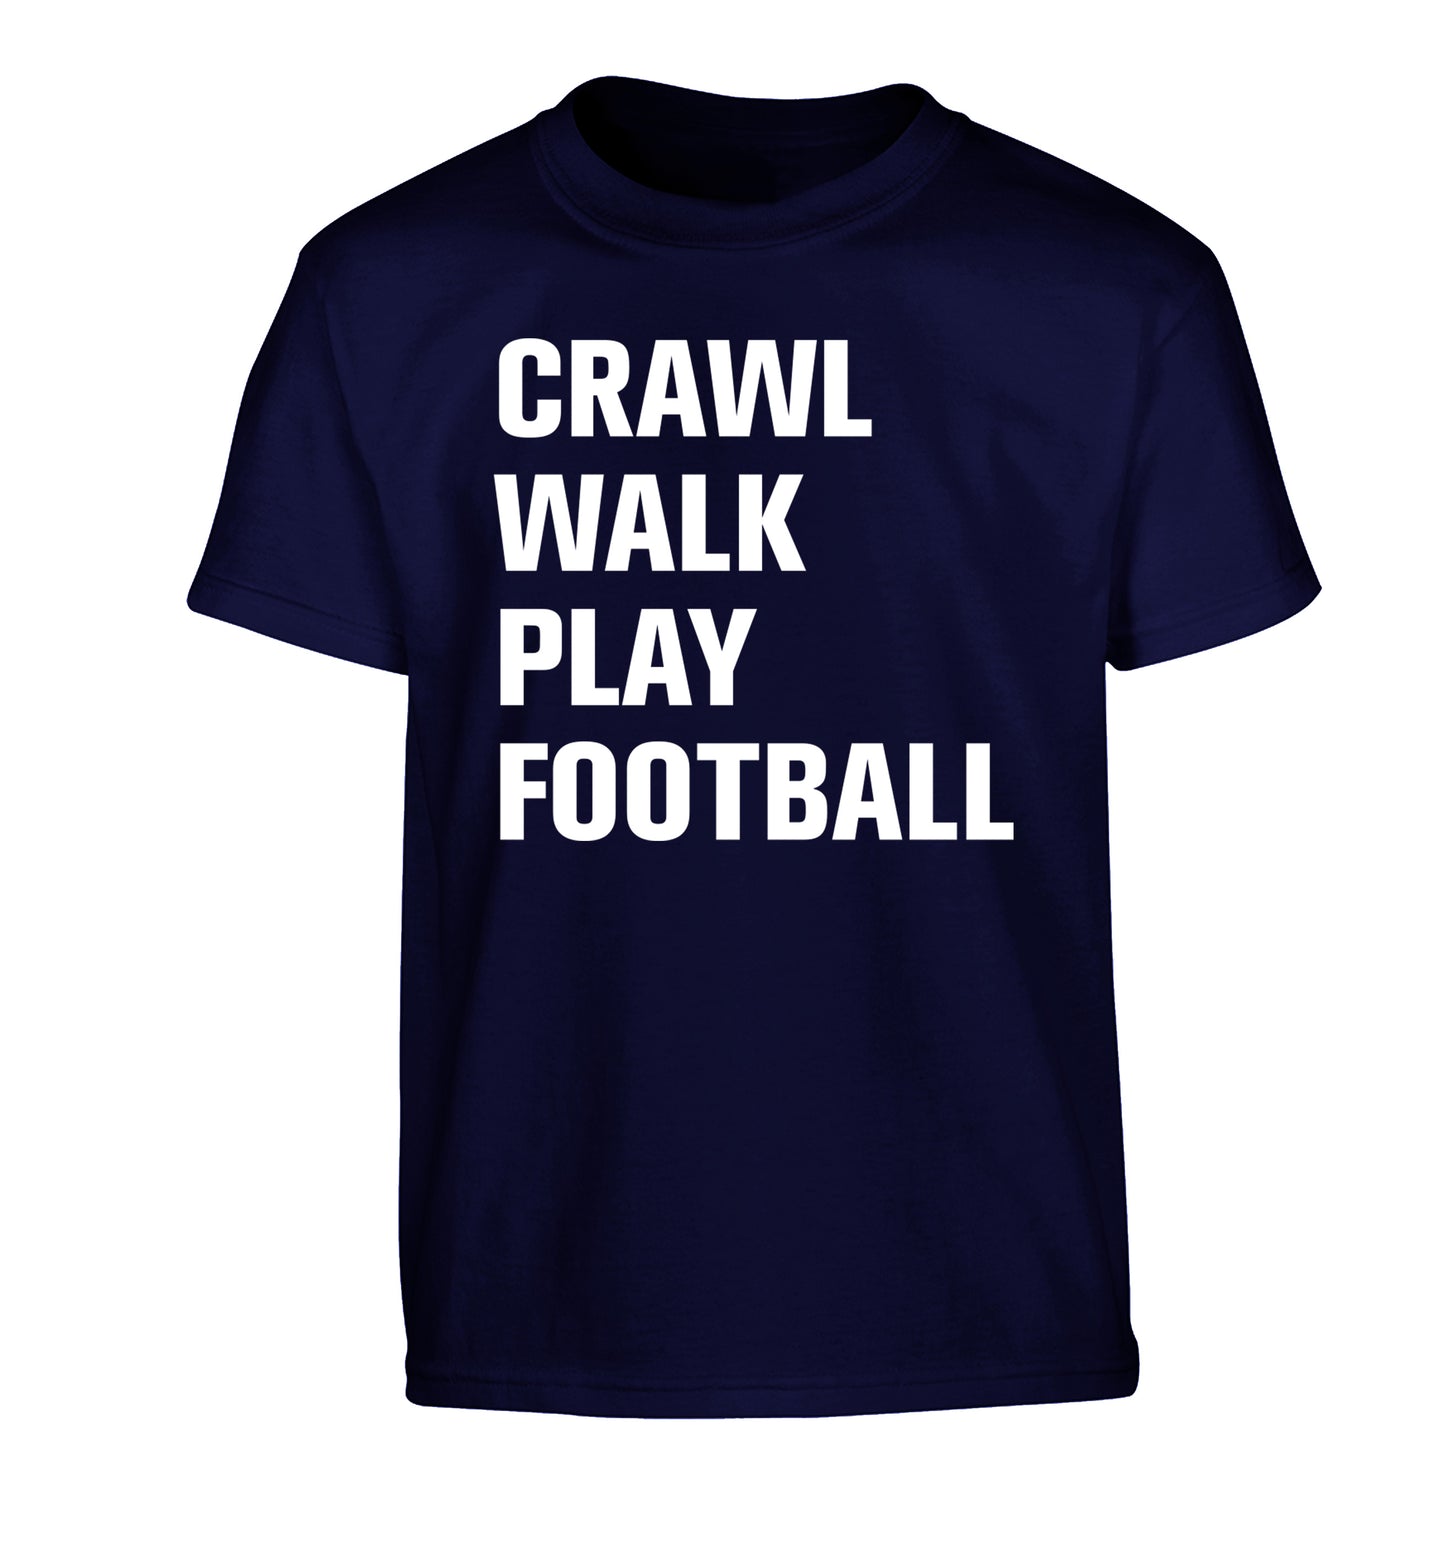 Crawl, walk, play football Children's navy Tshirt 12-13 Years